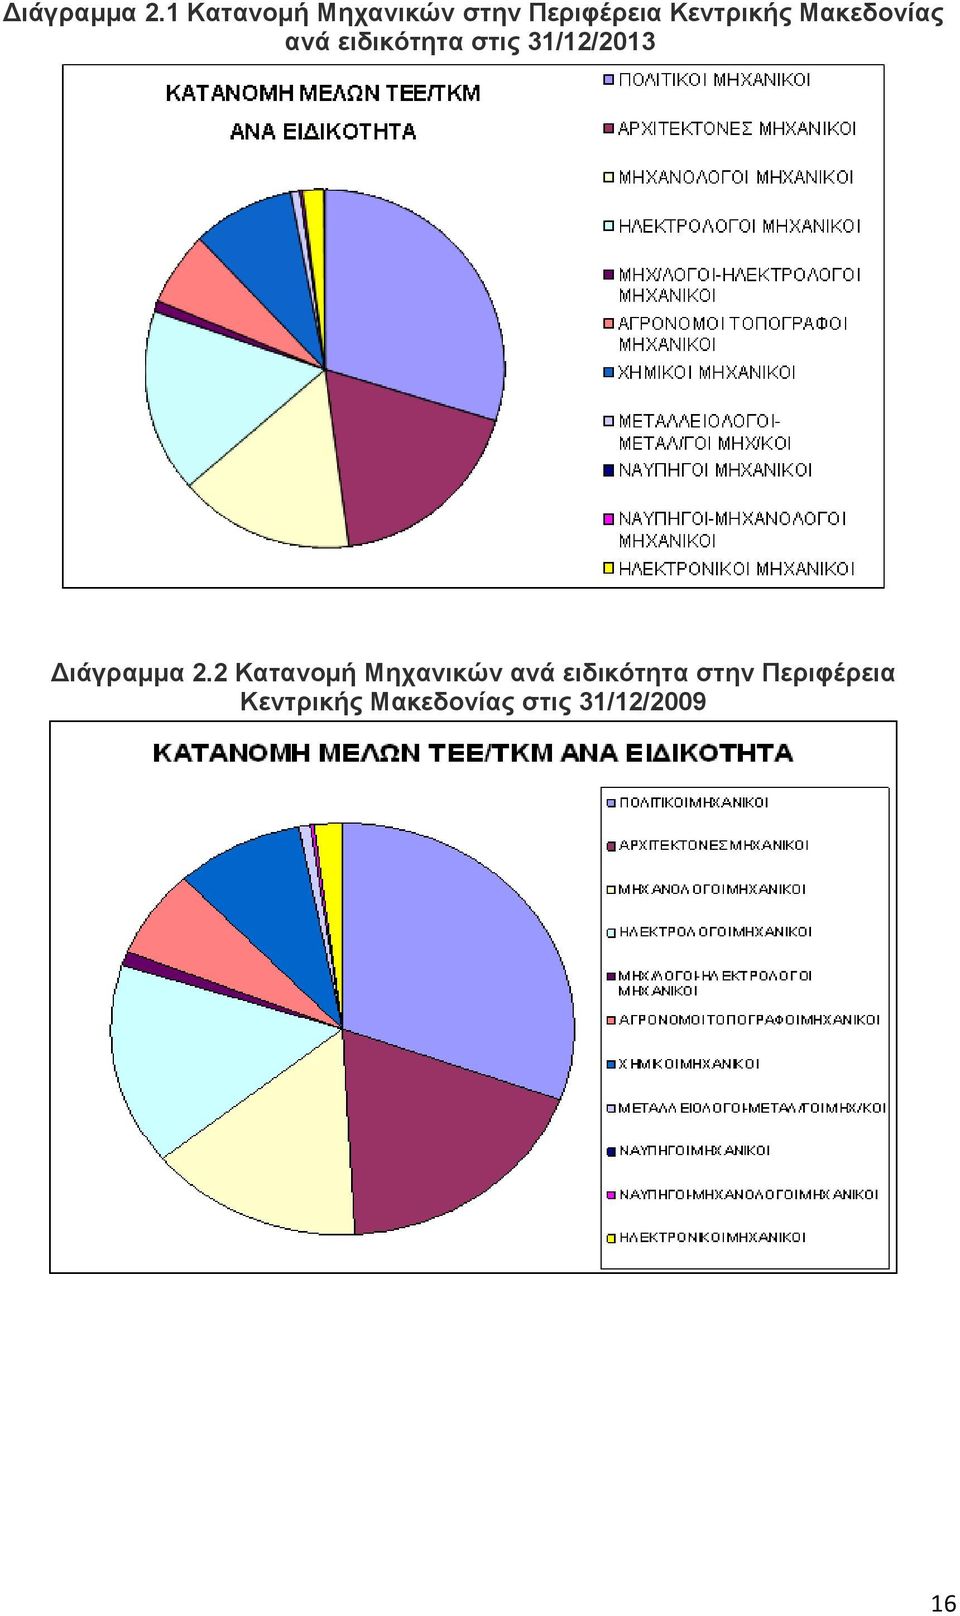 Μακεδονίας ανά ειδικότητα στις 31/12/2013 2